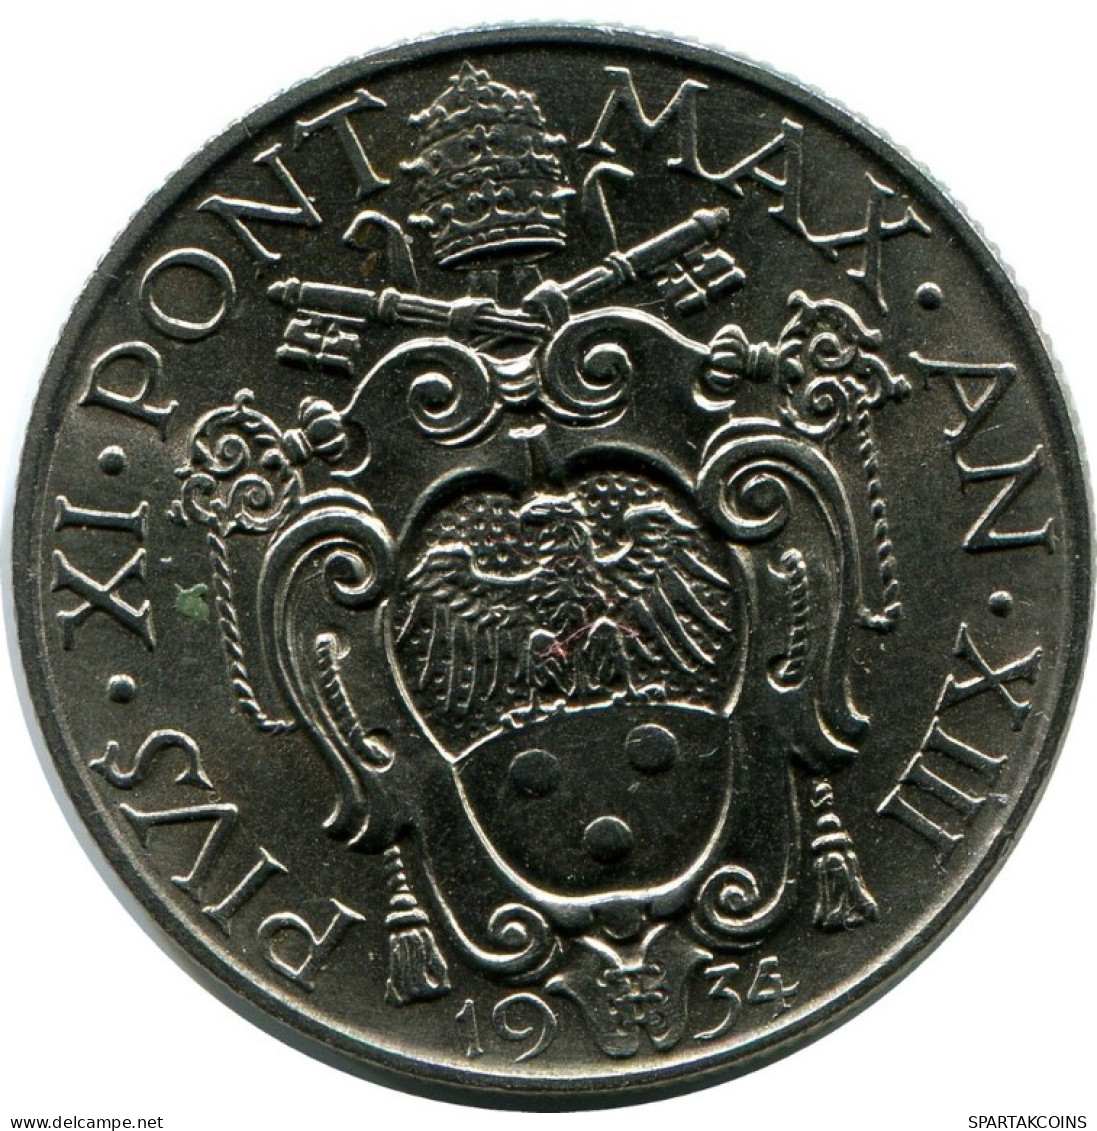 1 LIRE 1934 VATICAN Coin Pius XI (1922-1939) #AH313.16.U.A - Vaticano (Ciudad Del)